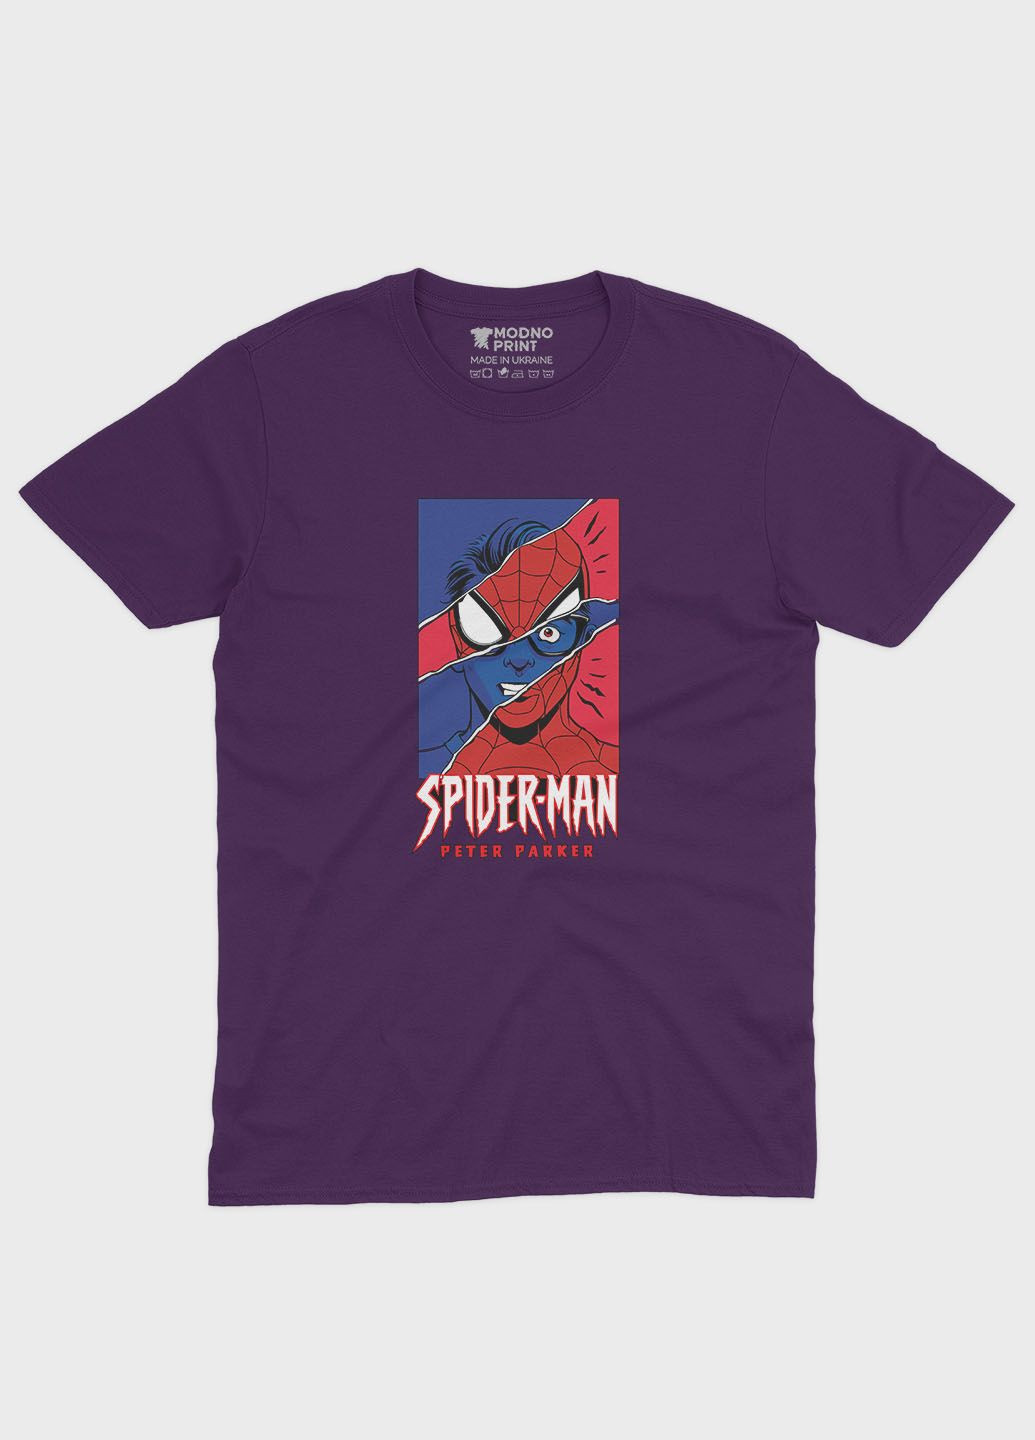 Фиолетовая демисезонная футболка для девочки с принтом супергероя - человек-паук (ts001-1-dby-006-014-032-g) Modno